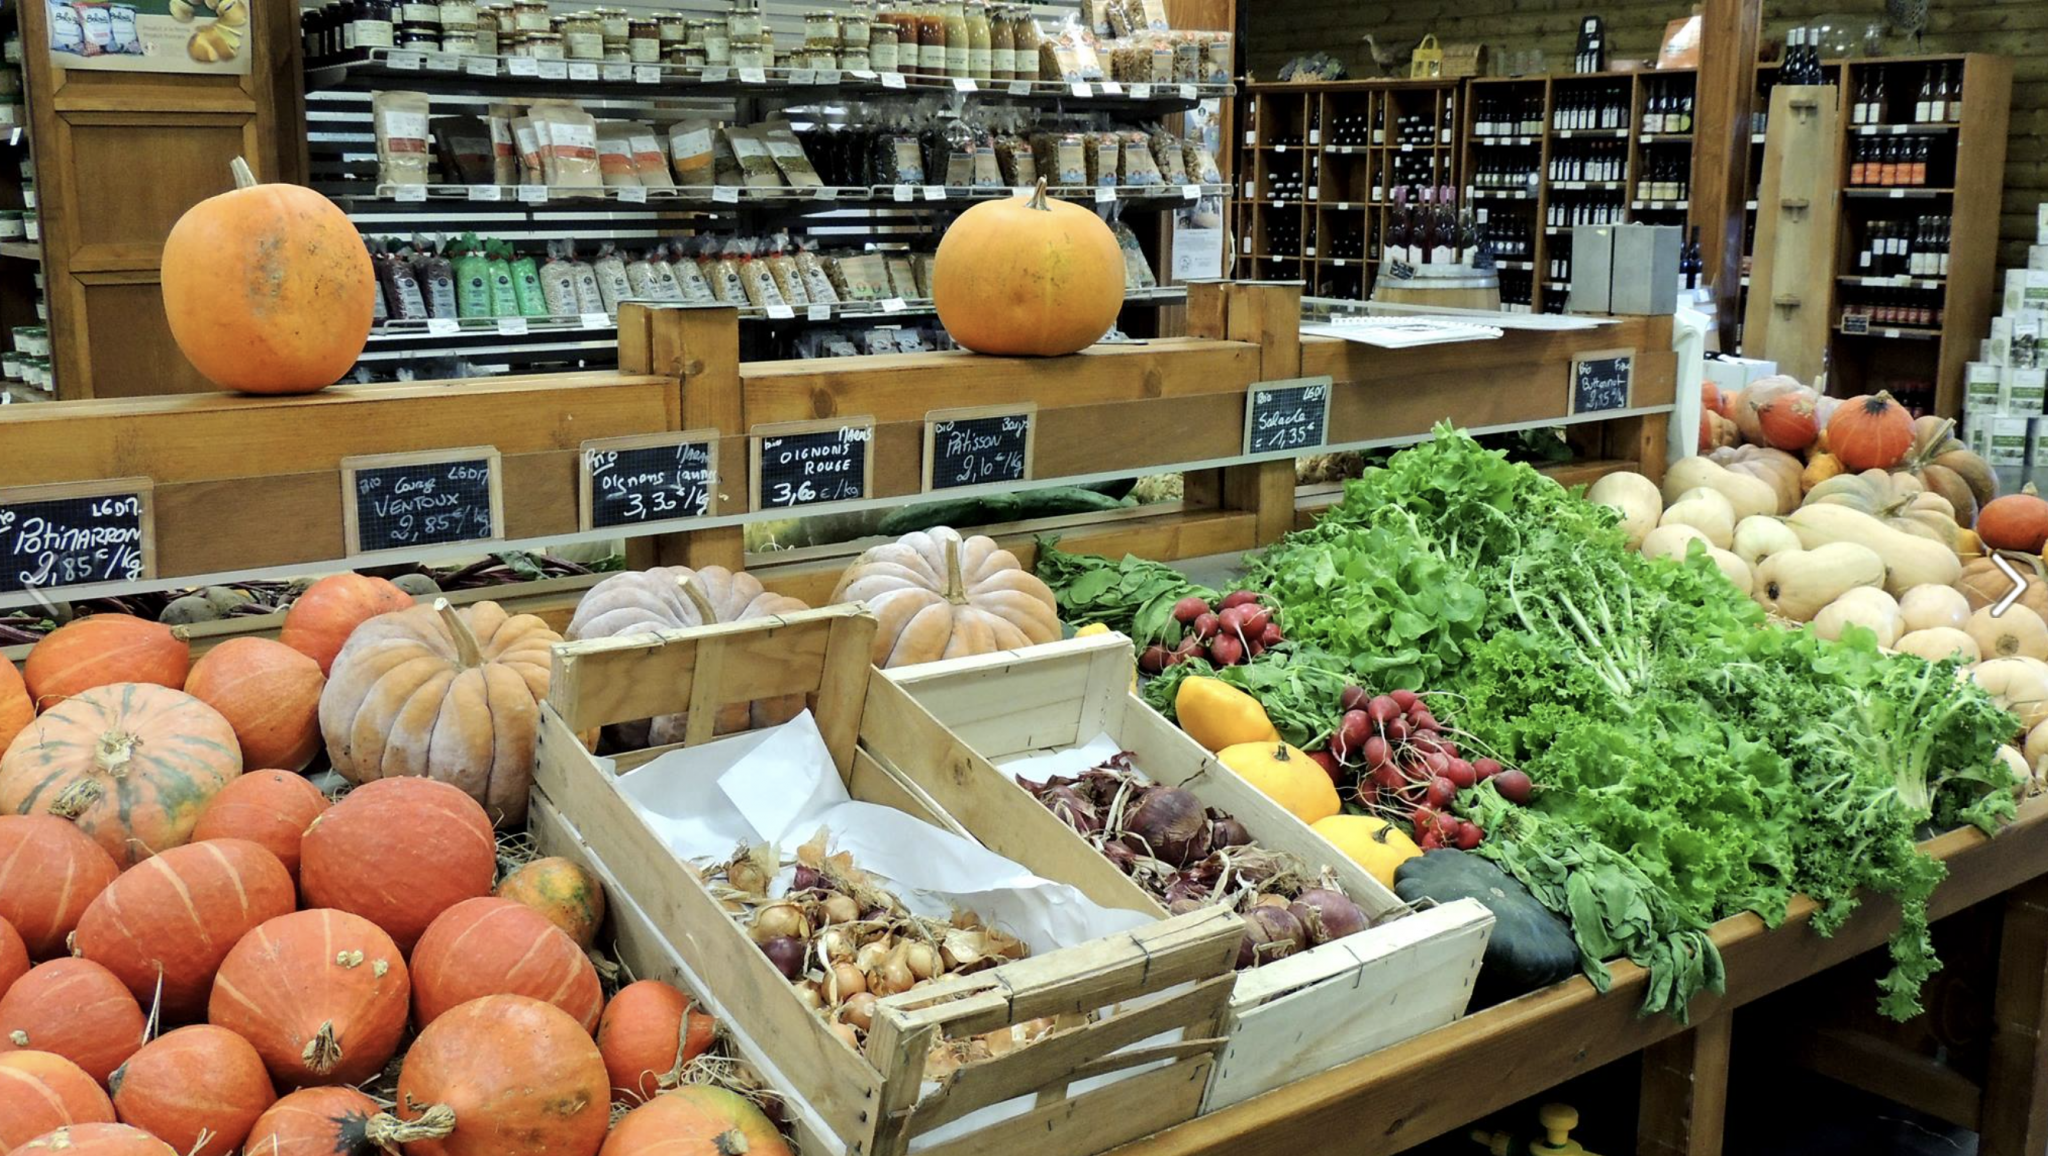 Biocoop - Les légumes c'est pas que l'été ! Découvrez les légumes insolites  d'hiver dans vos magasins en janvier !